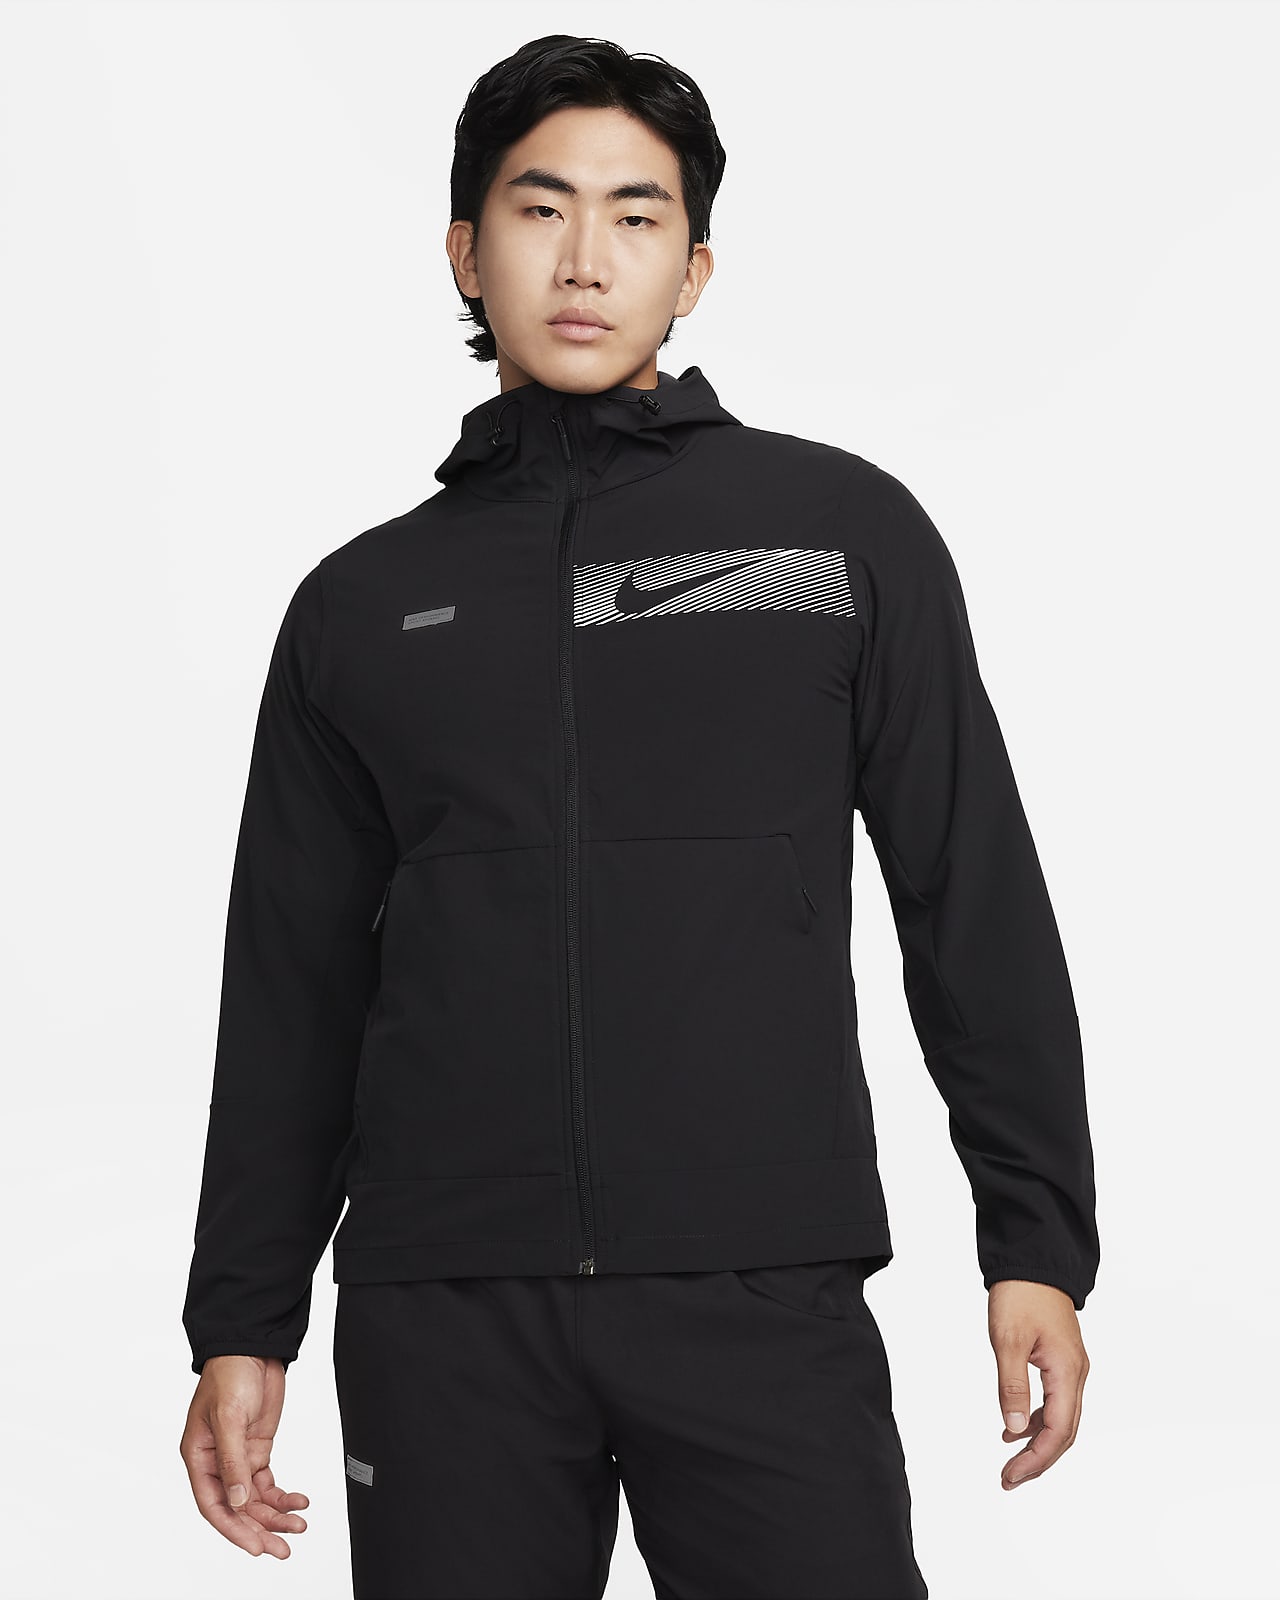 Pánská všestranná bunda Repel Nike Unlimited s kapucí